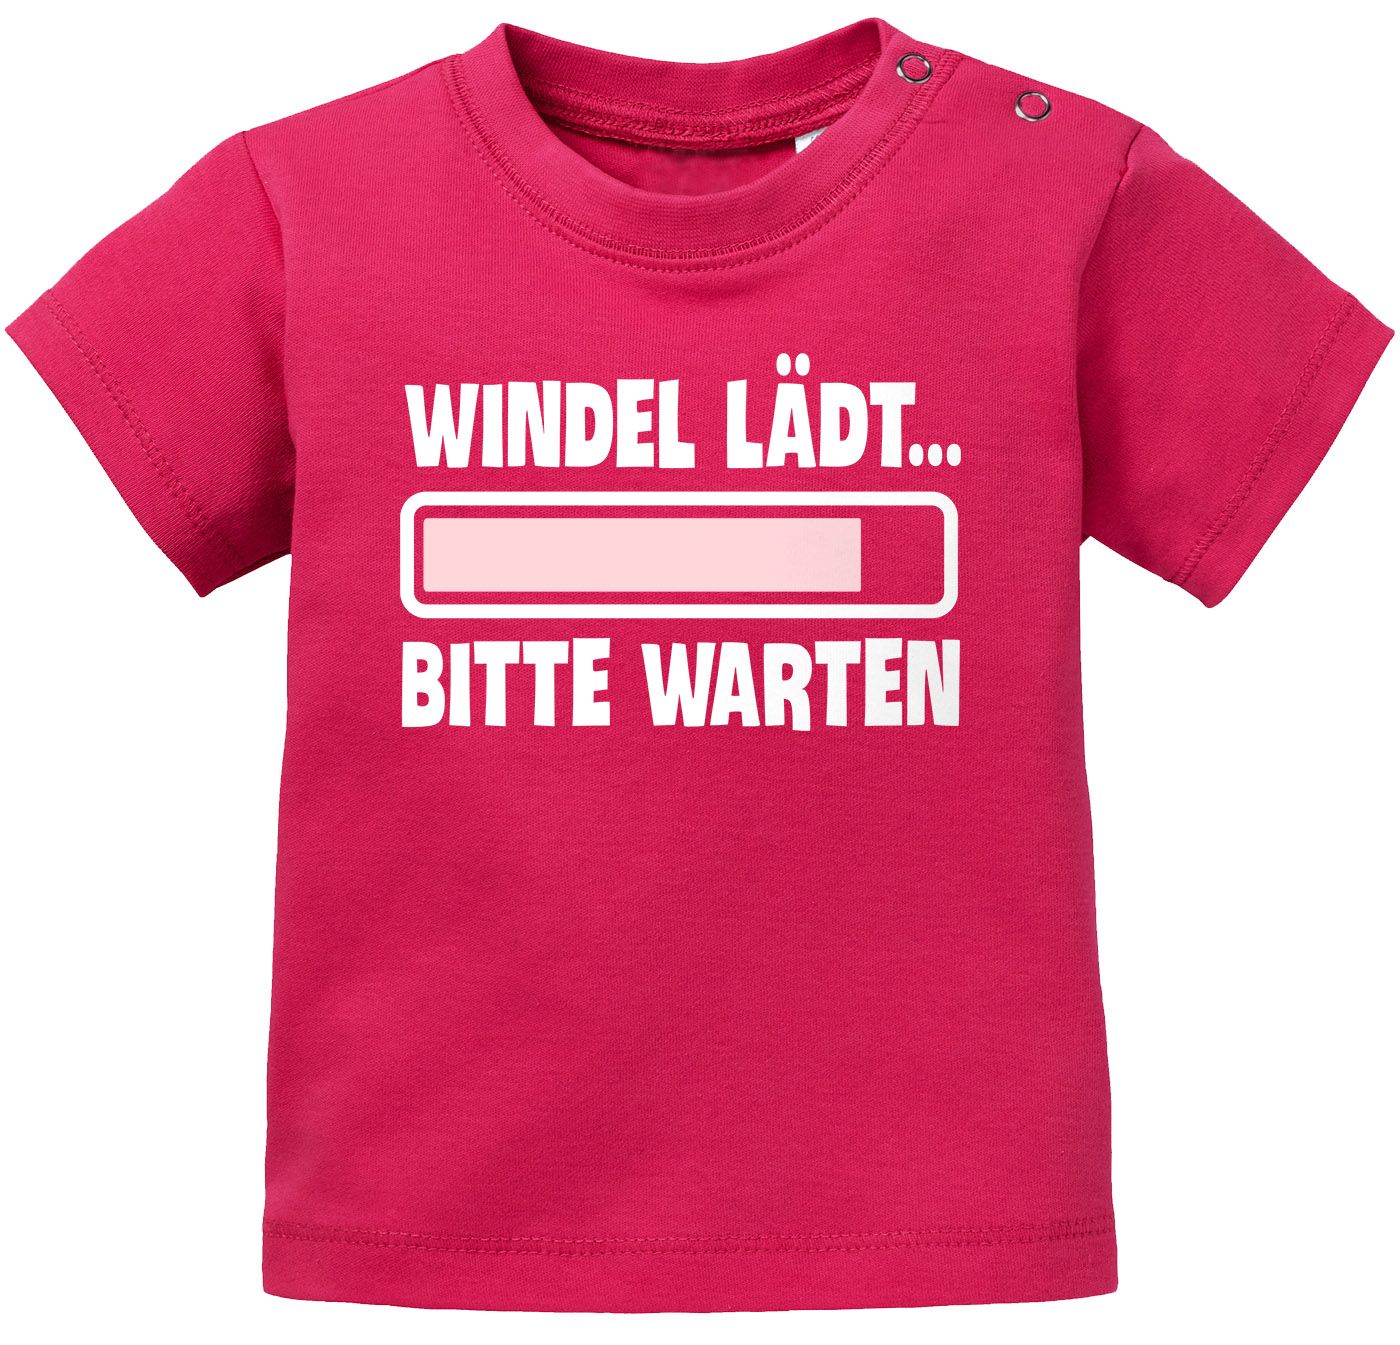 Baby T-Shirt kurzarm Babyshirt Windel lädt bitte warten Spruch lustig  Jungen | eBay